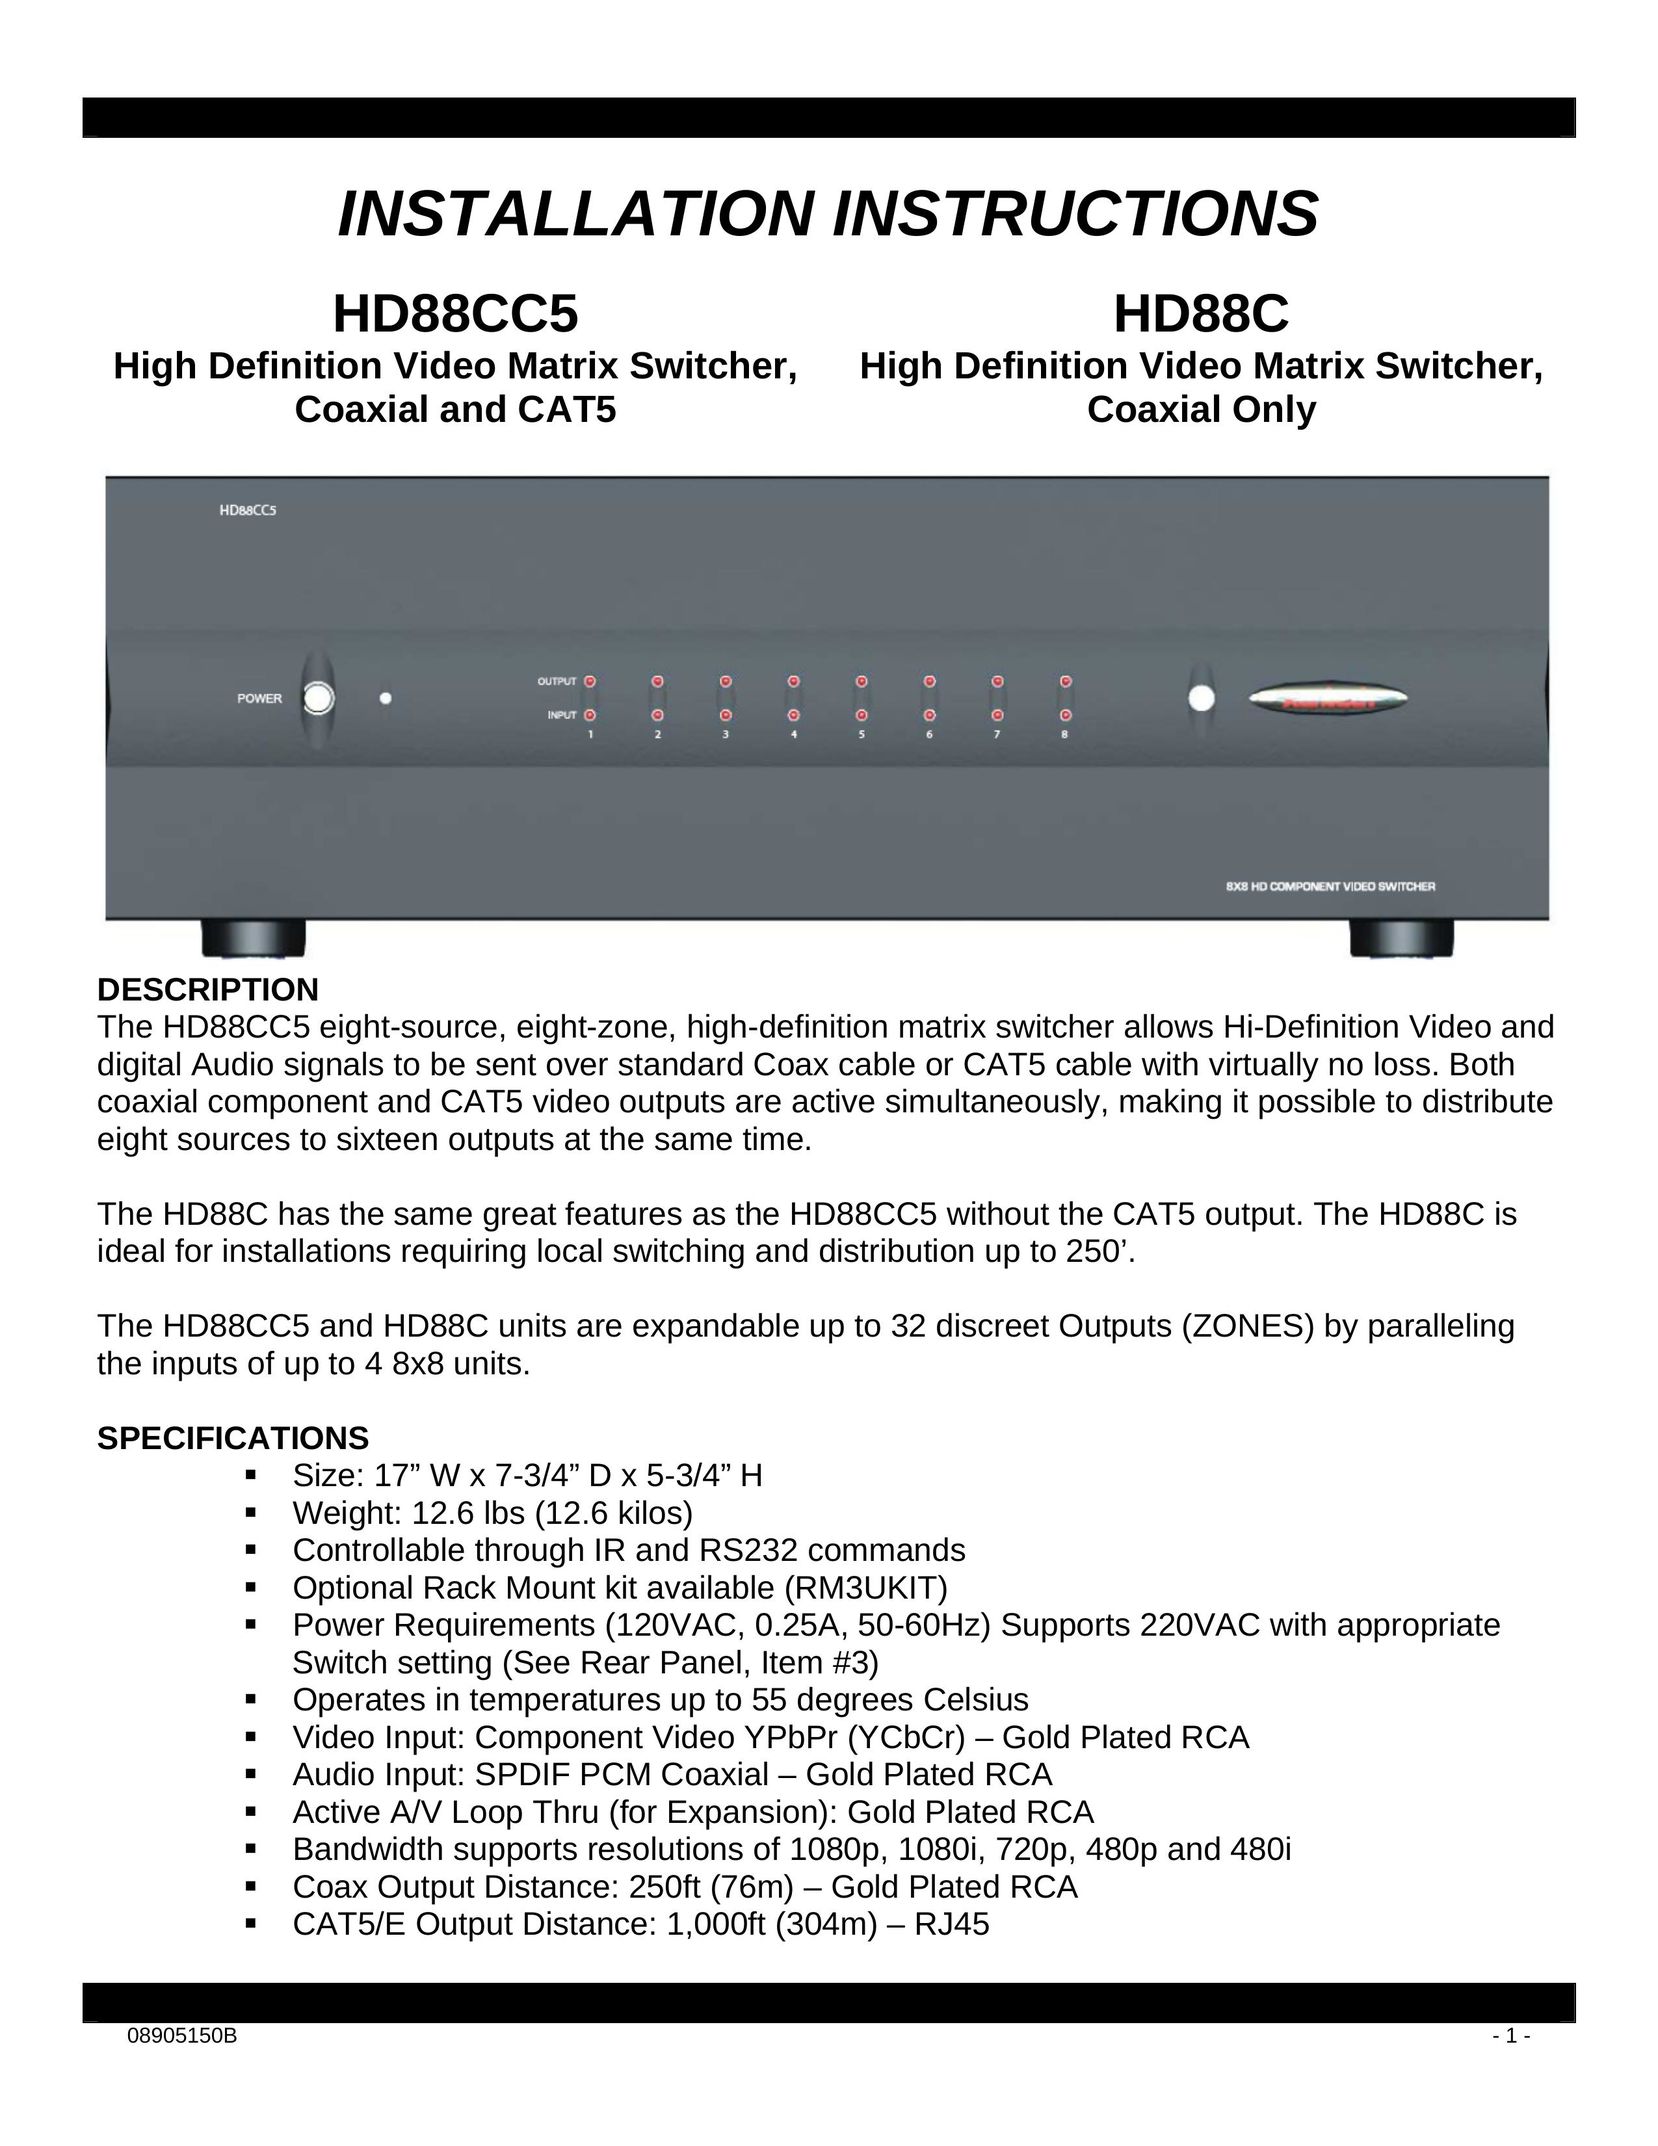 Xantech HD88CC5 Switch User Manual